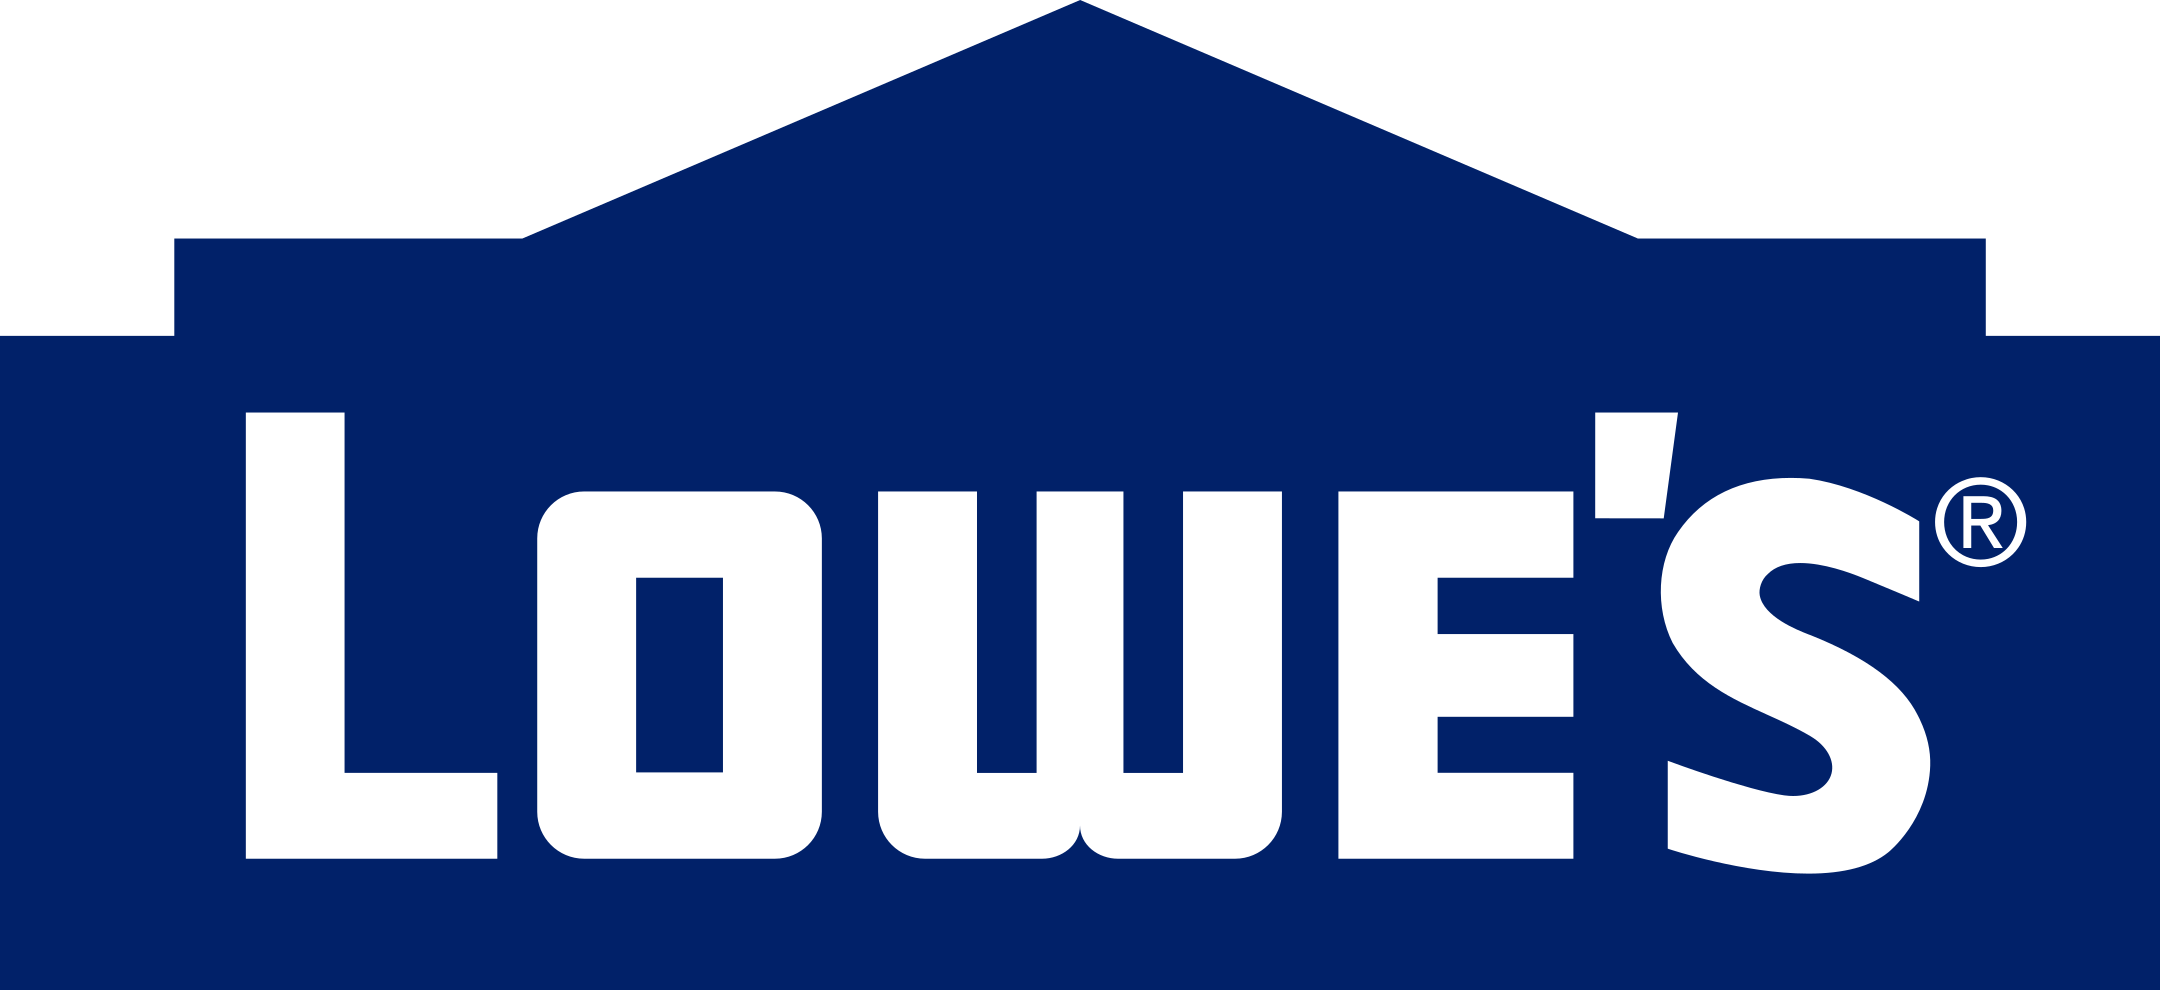 lowes logo 1 - Lowe’s Logo